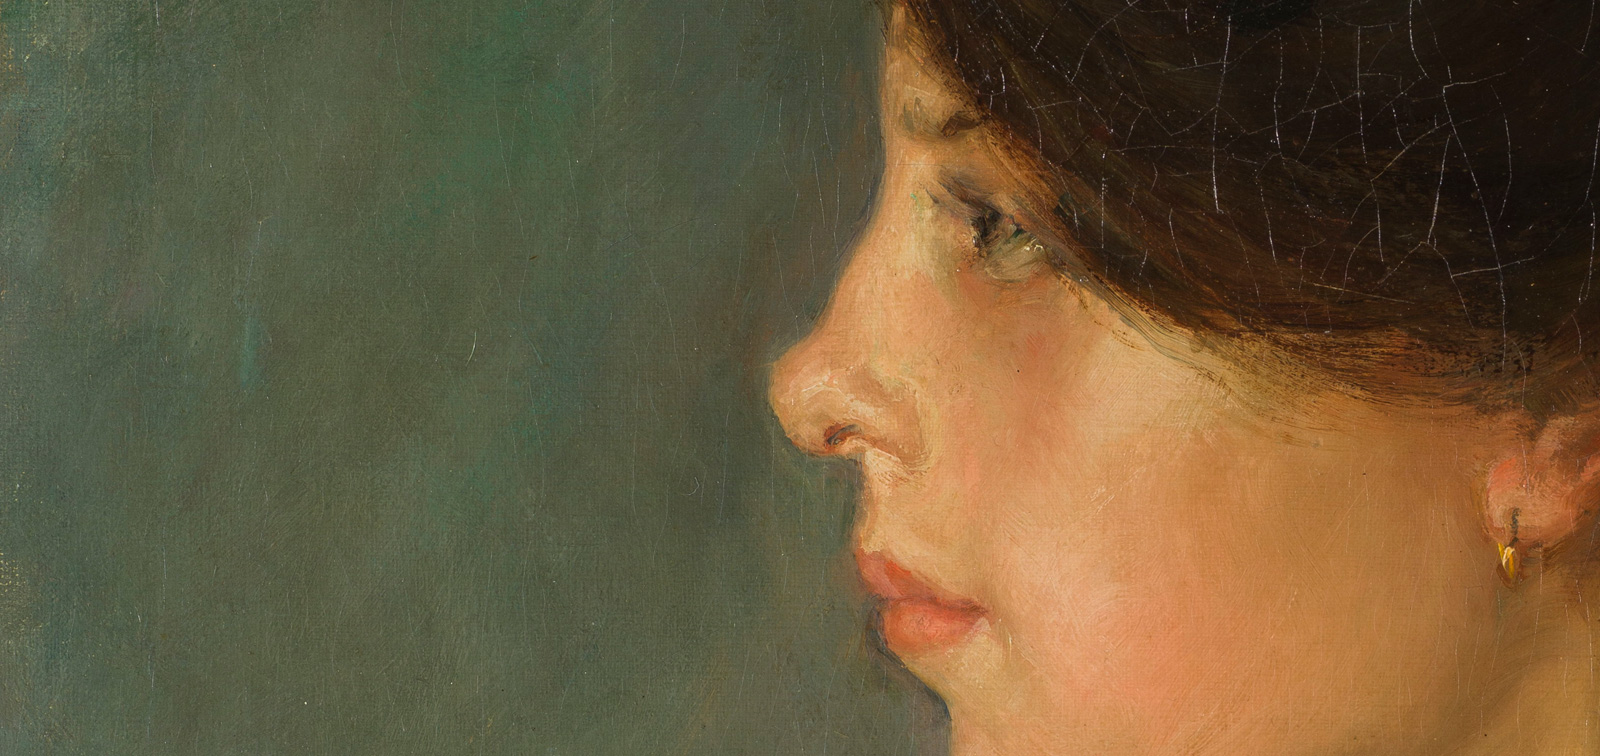 Mujeres artistas en el Prado. El siglo XIX y el tránsito a la modernidad